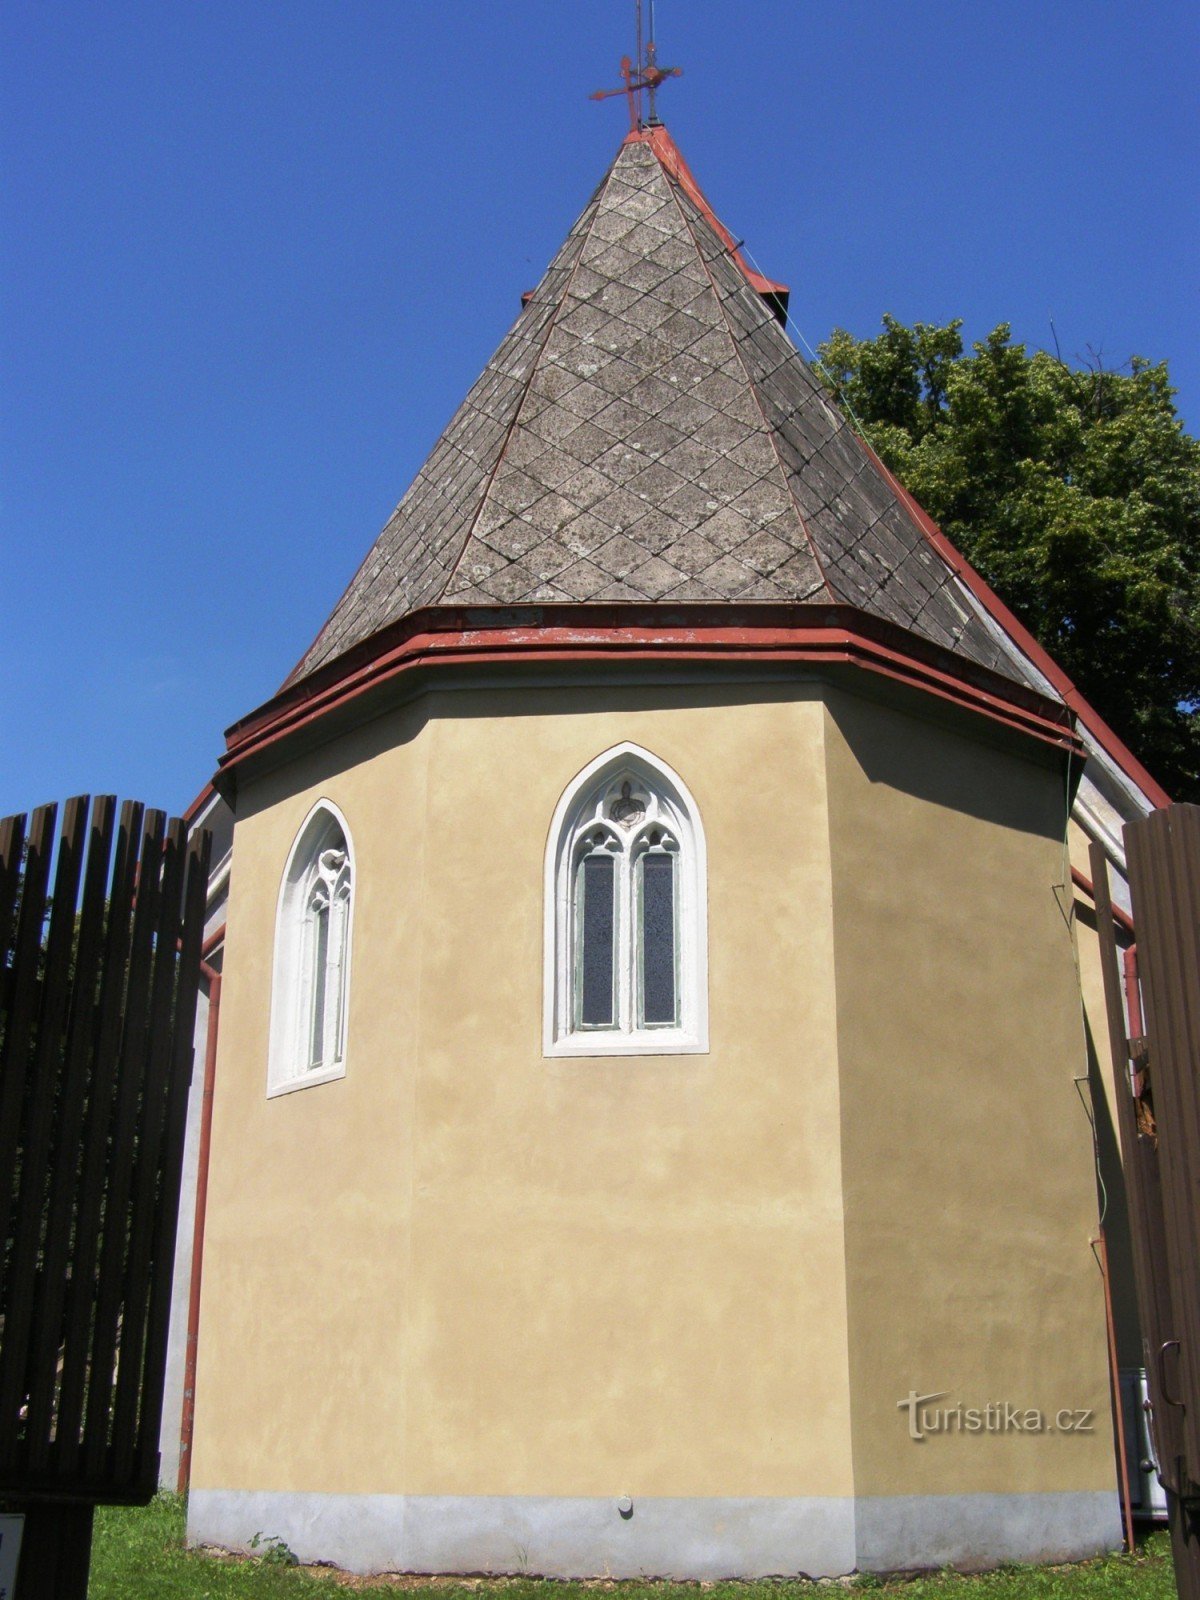 A la petite église - l'église de St. Pierre et Paul